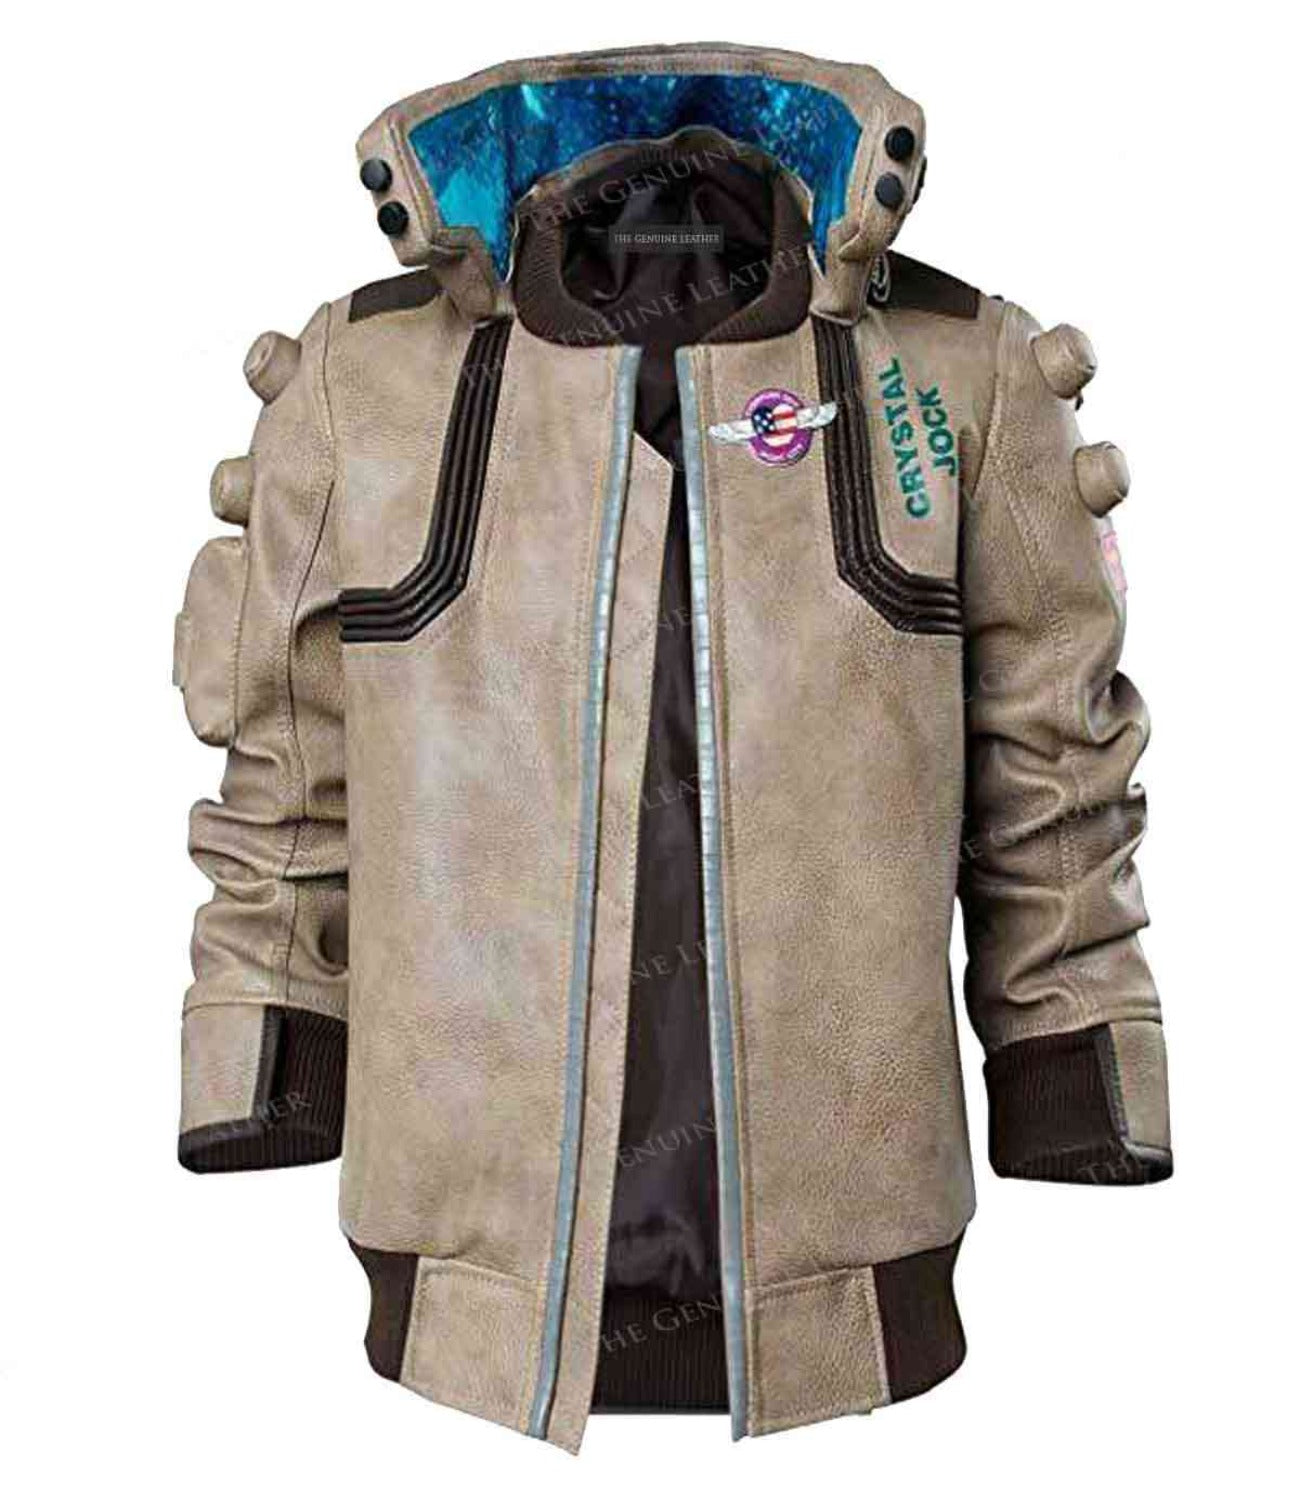 Cyberpunk 2077 Jacket